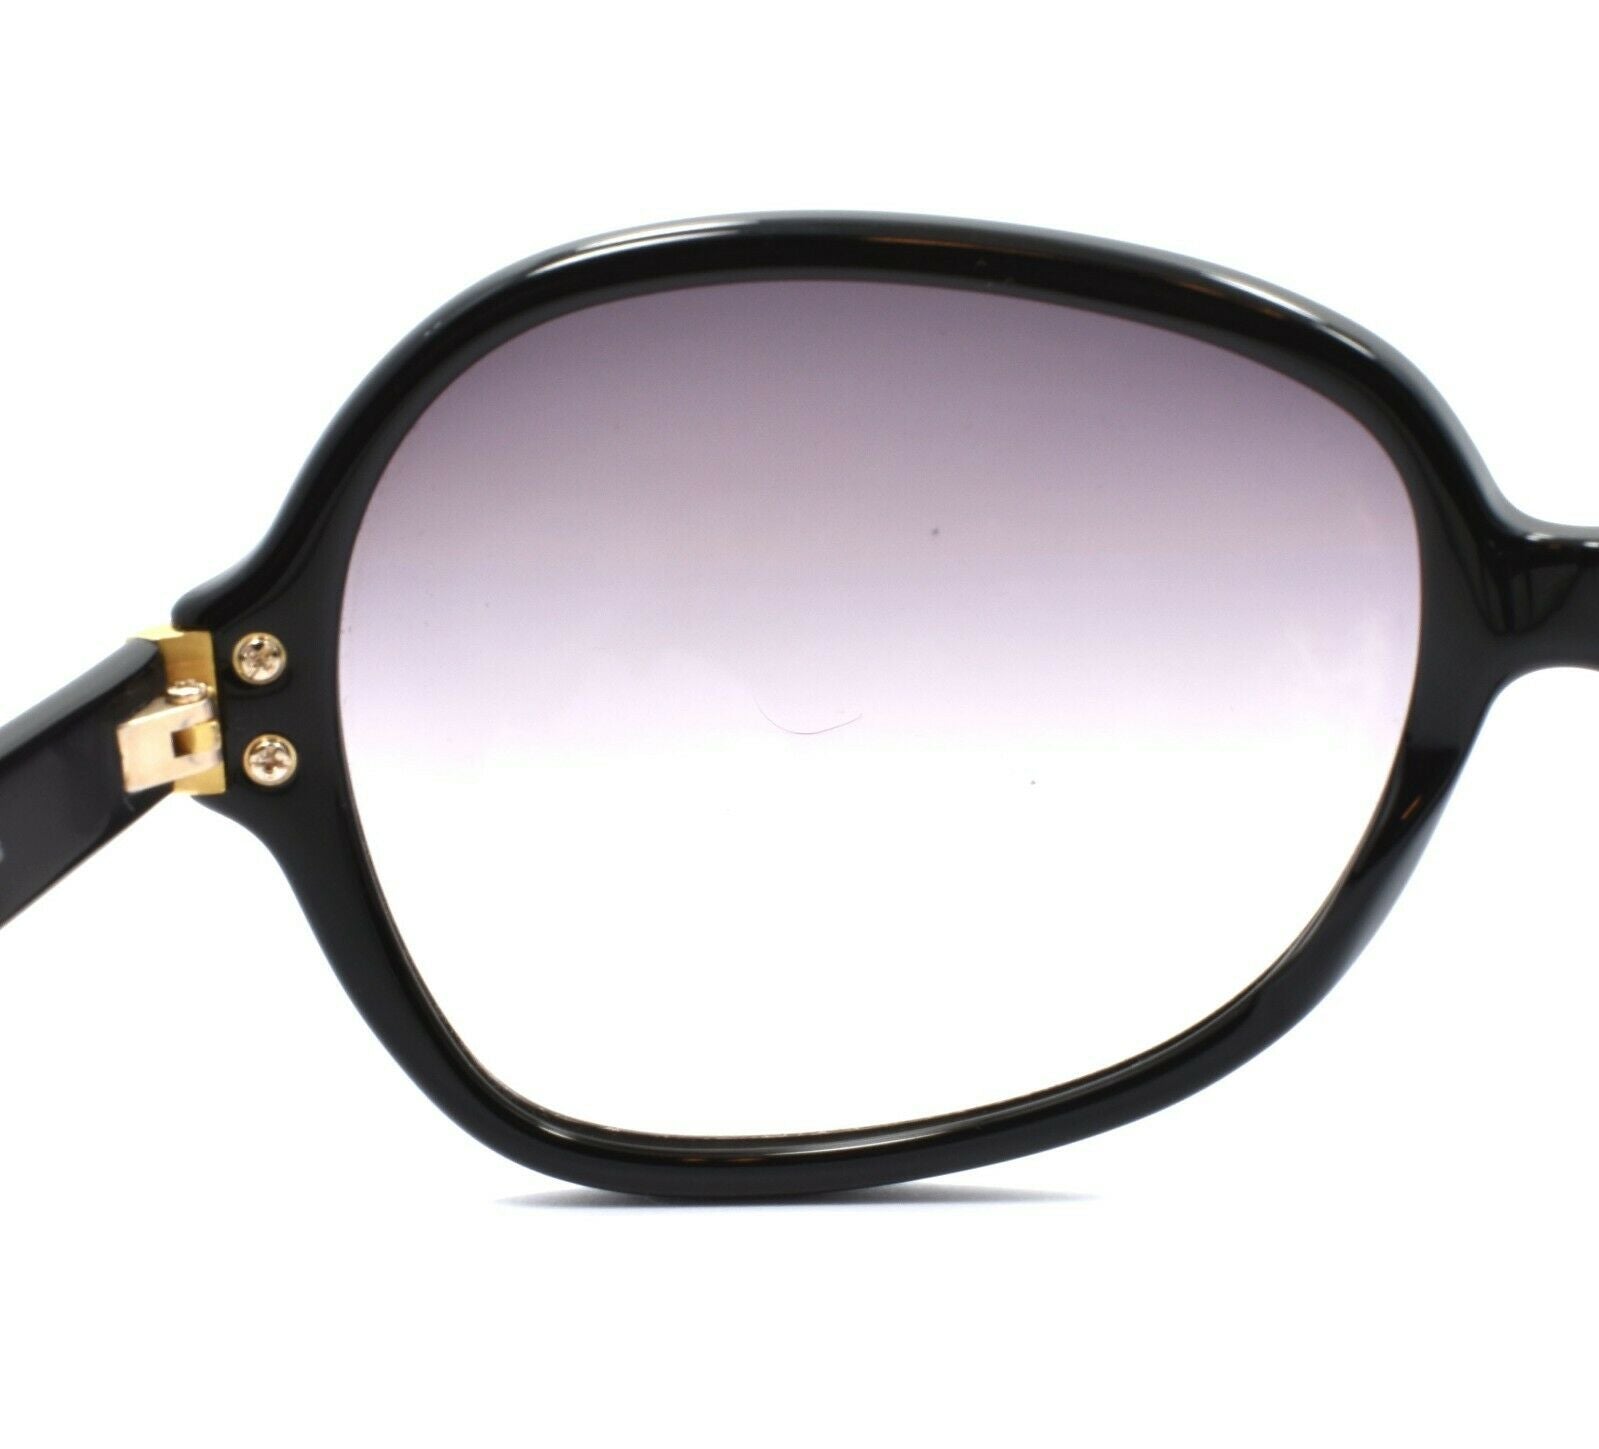 4-Oliver Peoples Leyla BK/G Women's Sunglasses Black / Violet Gradient JAPAN-Does not apply-IKSpecs